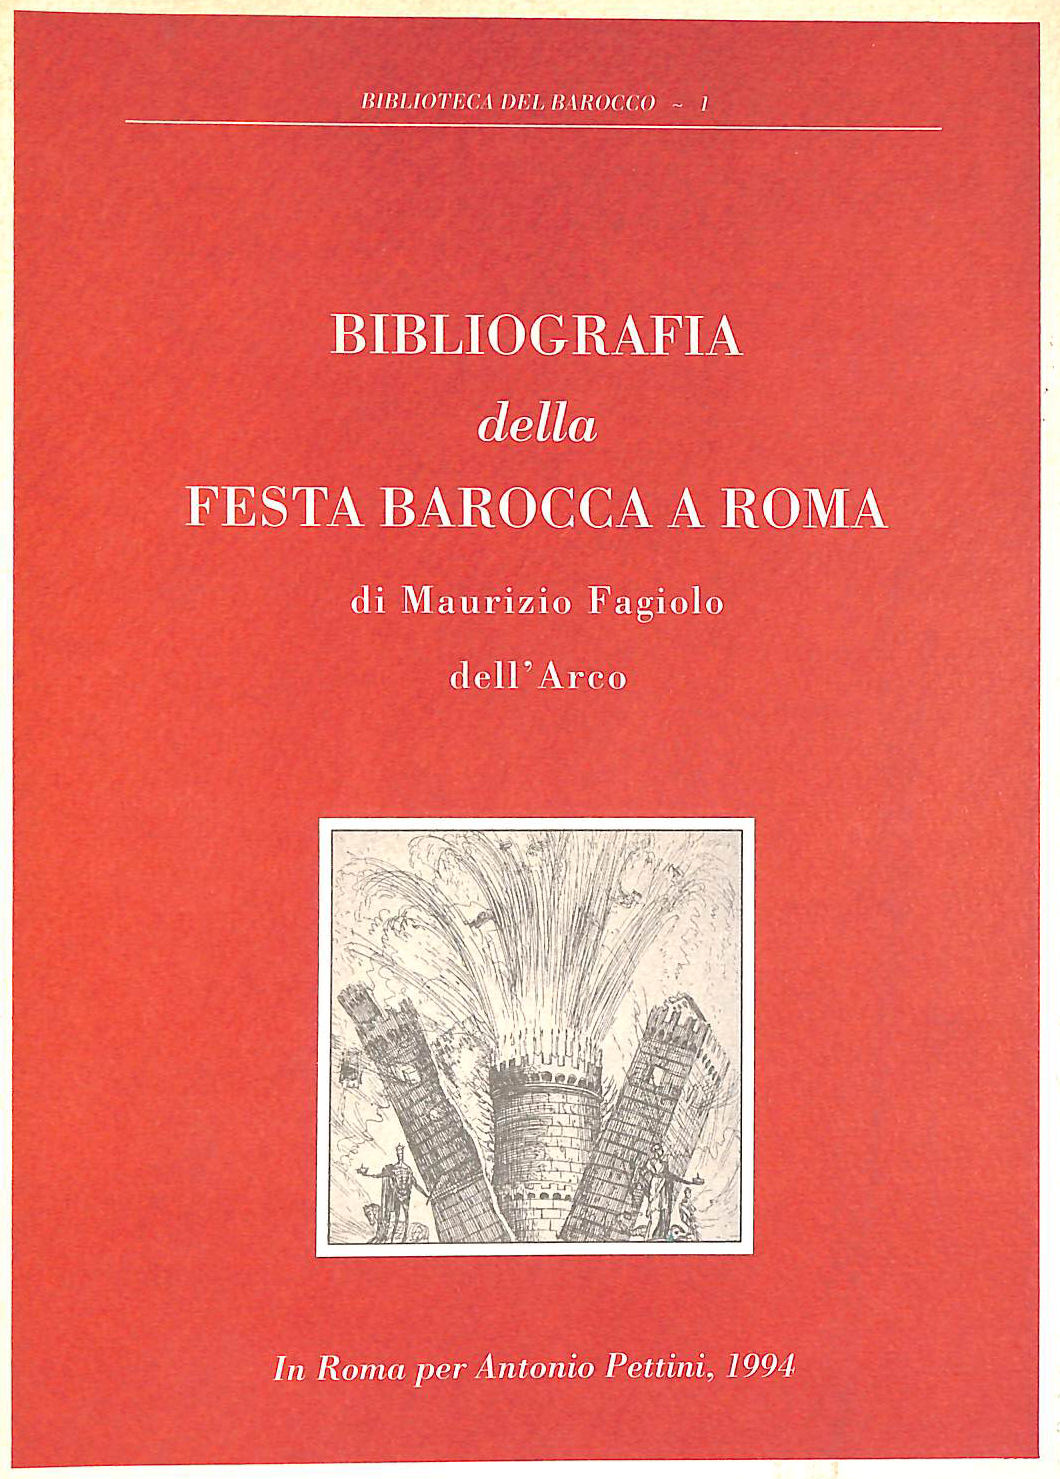 FAGIOLO DELL ARCO, MAURIZIO - Bibliografia Della Festa Barocca A Roma